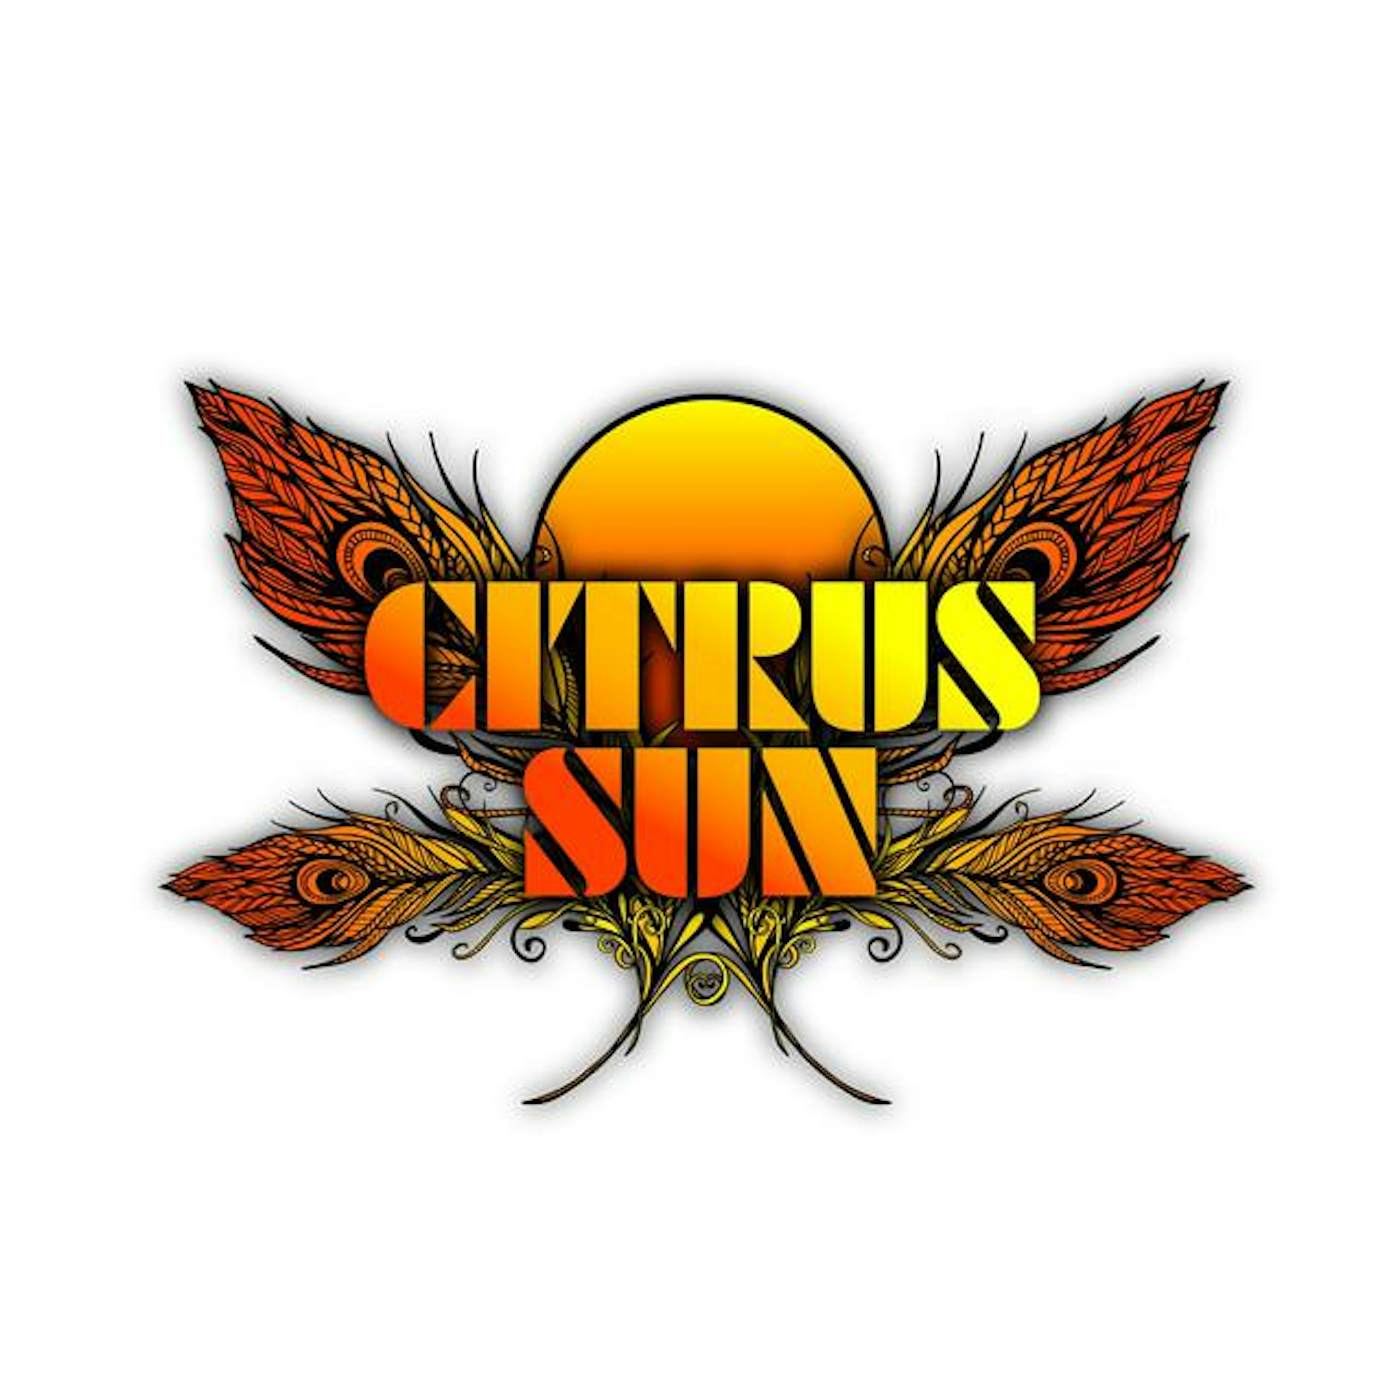 Citrus Sun